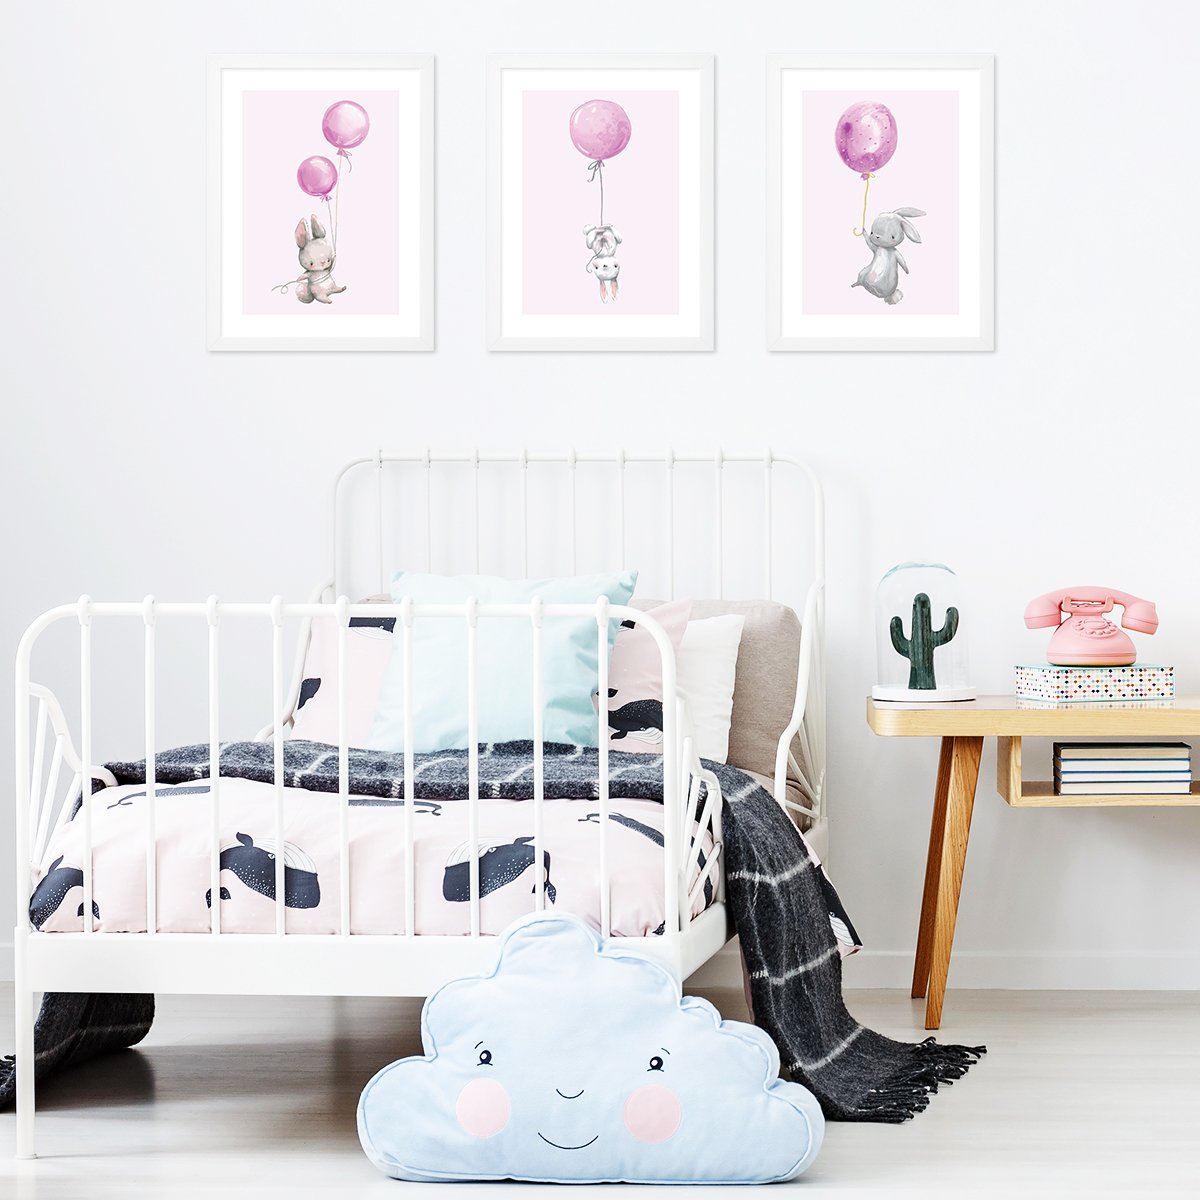 Plakaty dla dziewczynek z króliczkami i różowymi balonikami zawieszone nad łóżkiem w pokoju dziecięcym#kolor_rozowy